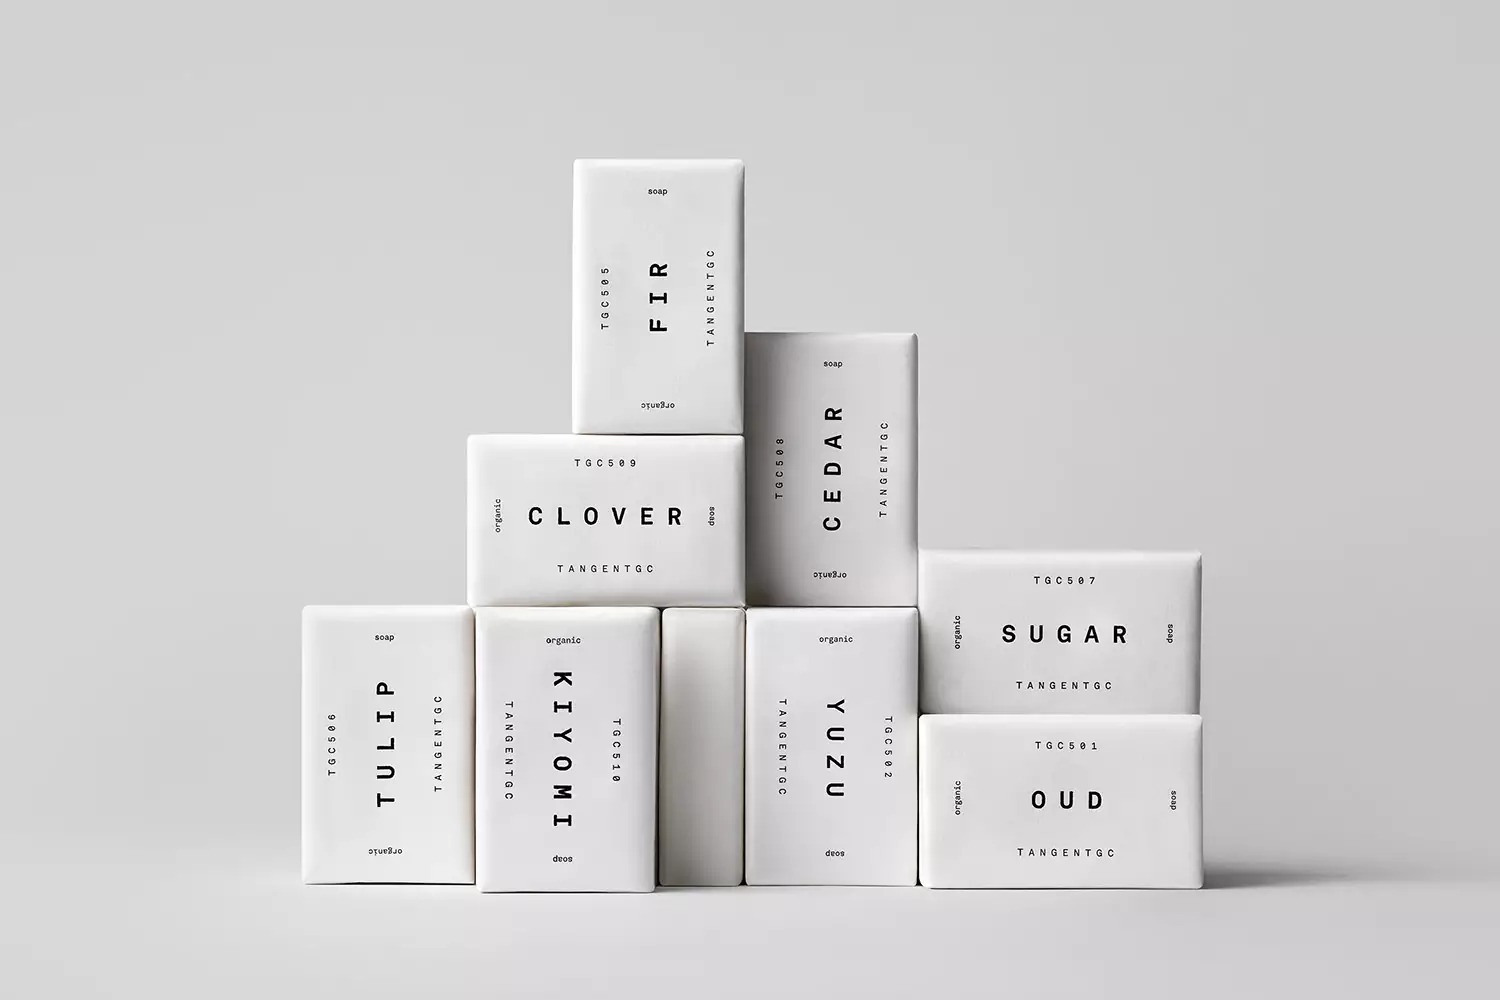 Tangent GC香皂包装设计欣赏 简约黑白风格香皂盒包装设计